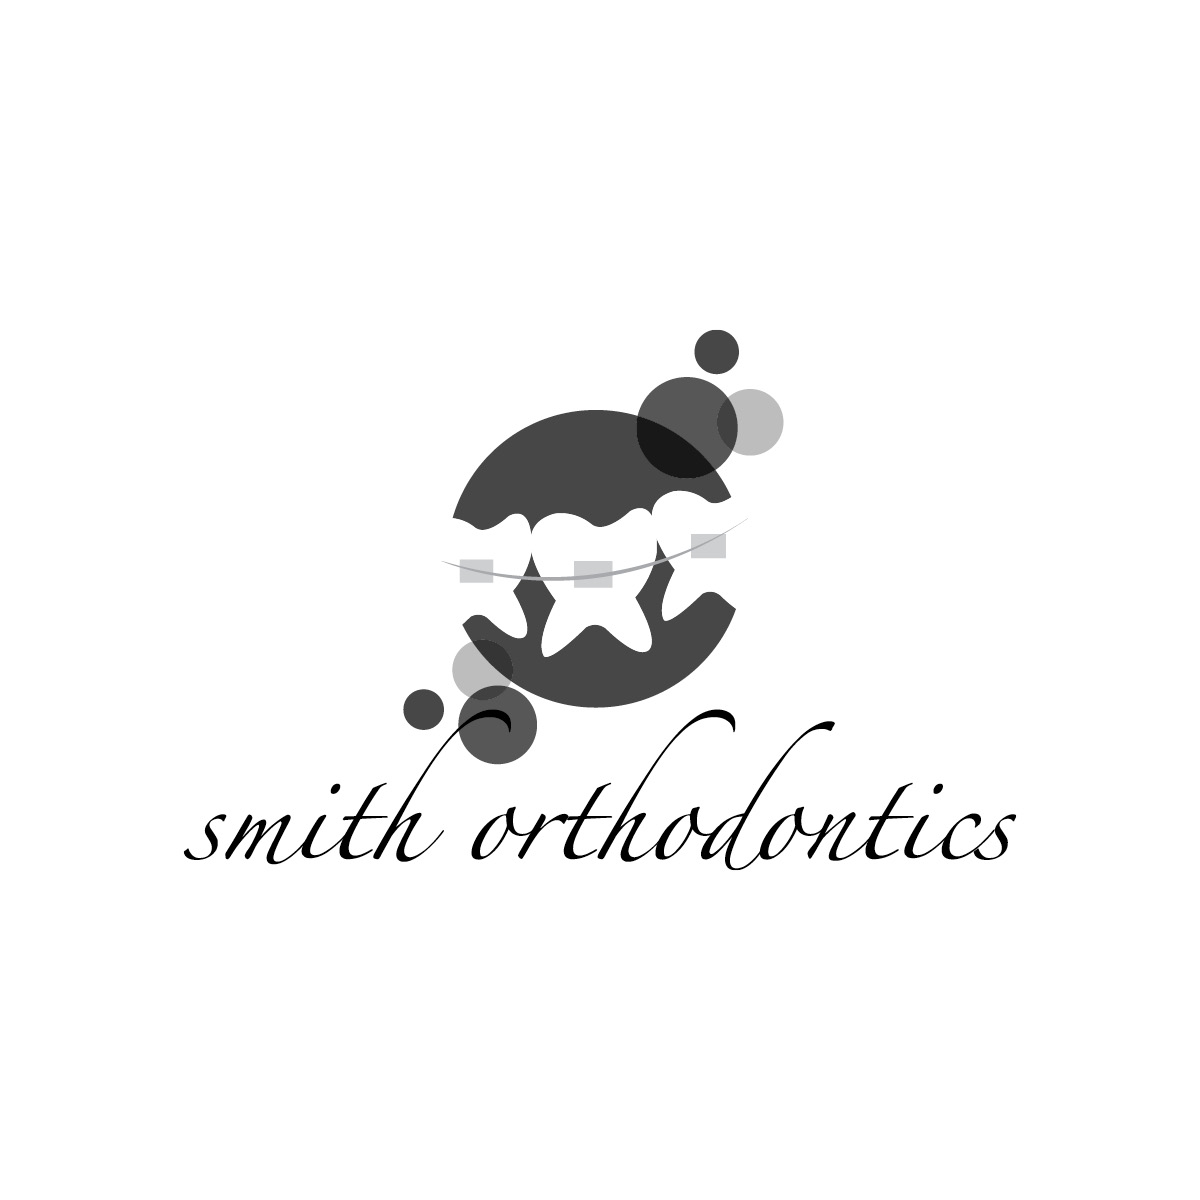 Smith Orthodontics